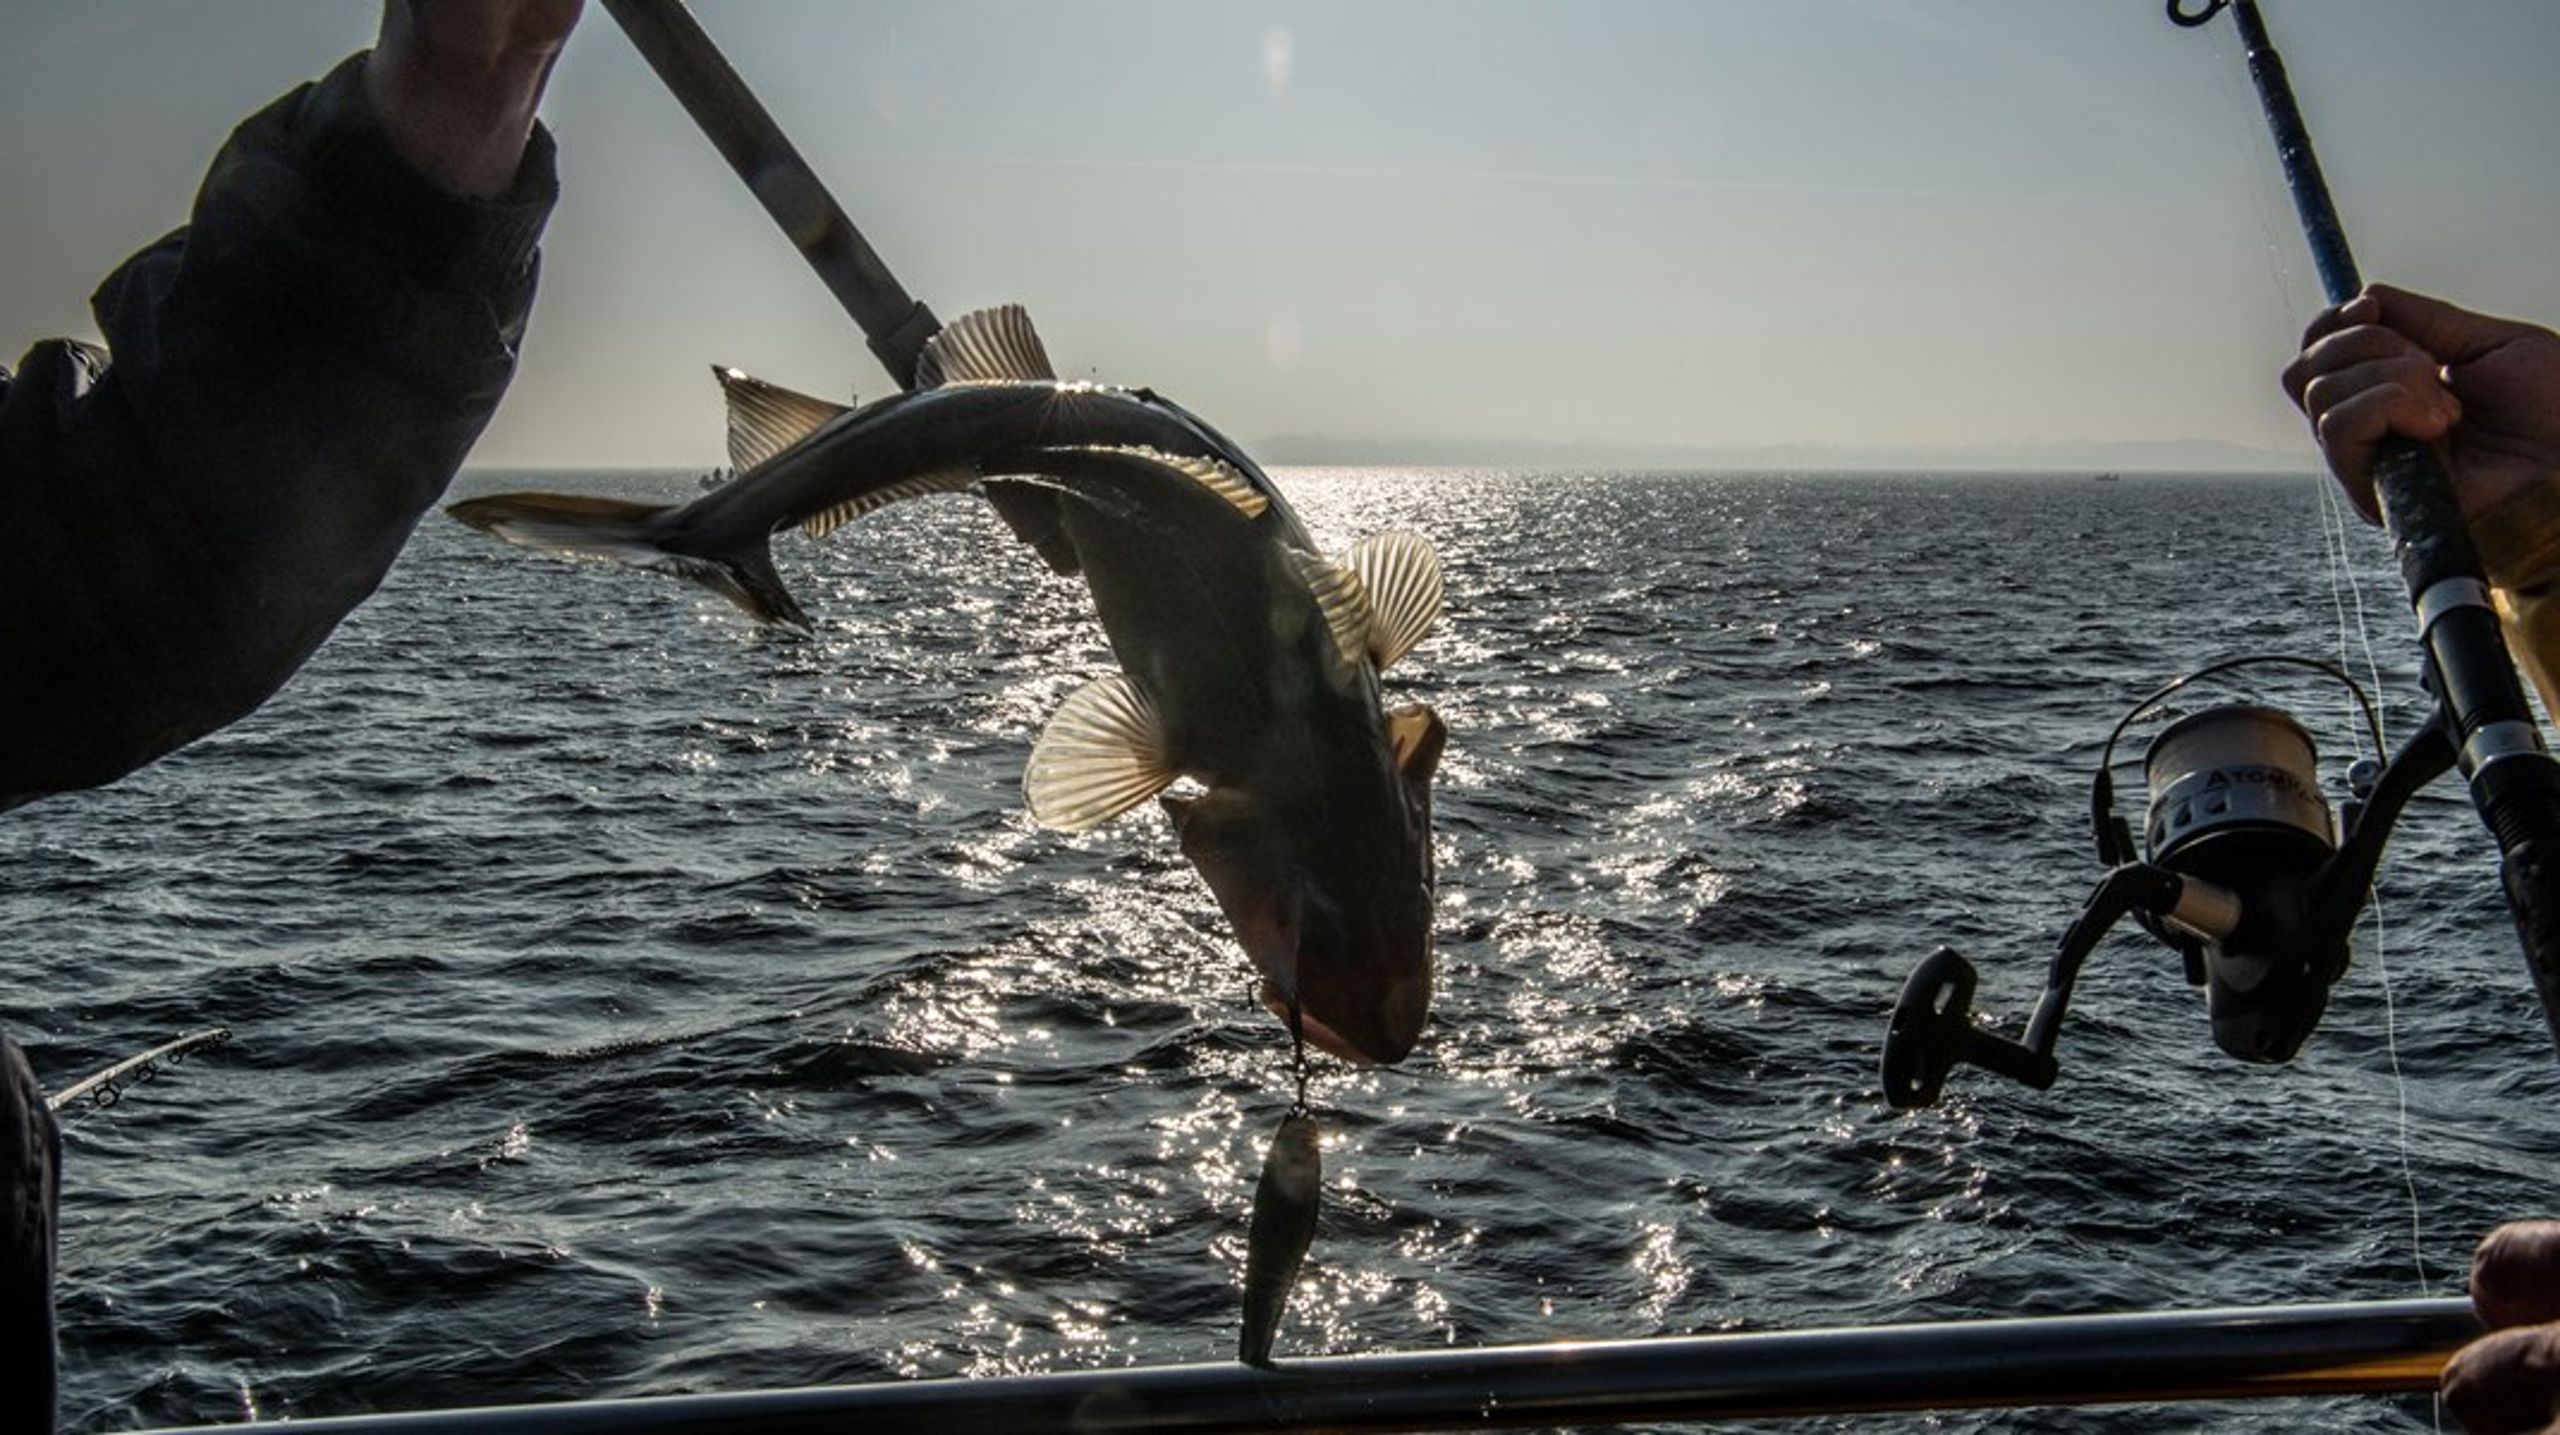 Vi kystfiskere er de første, der opdager, når fiskene forsvinder, skriver Søren Jacobsen.